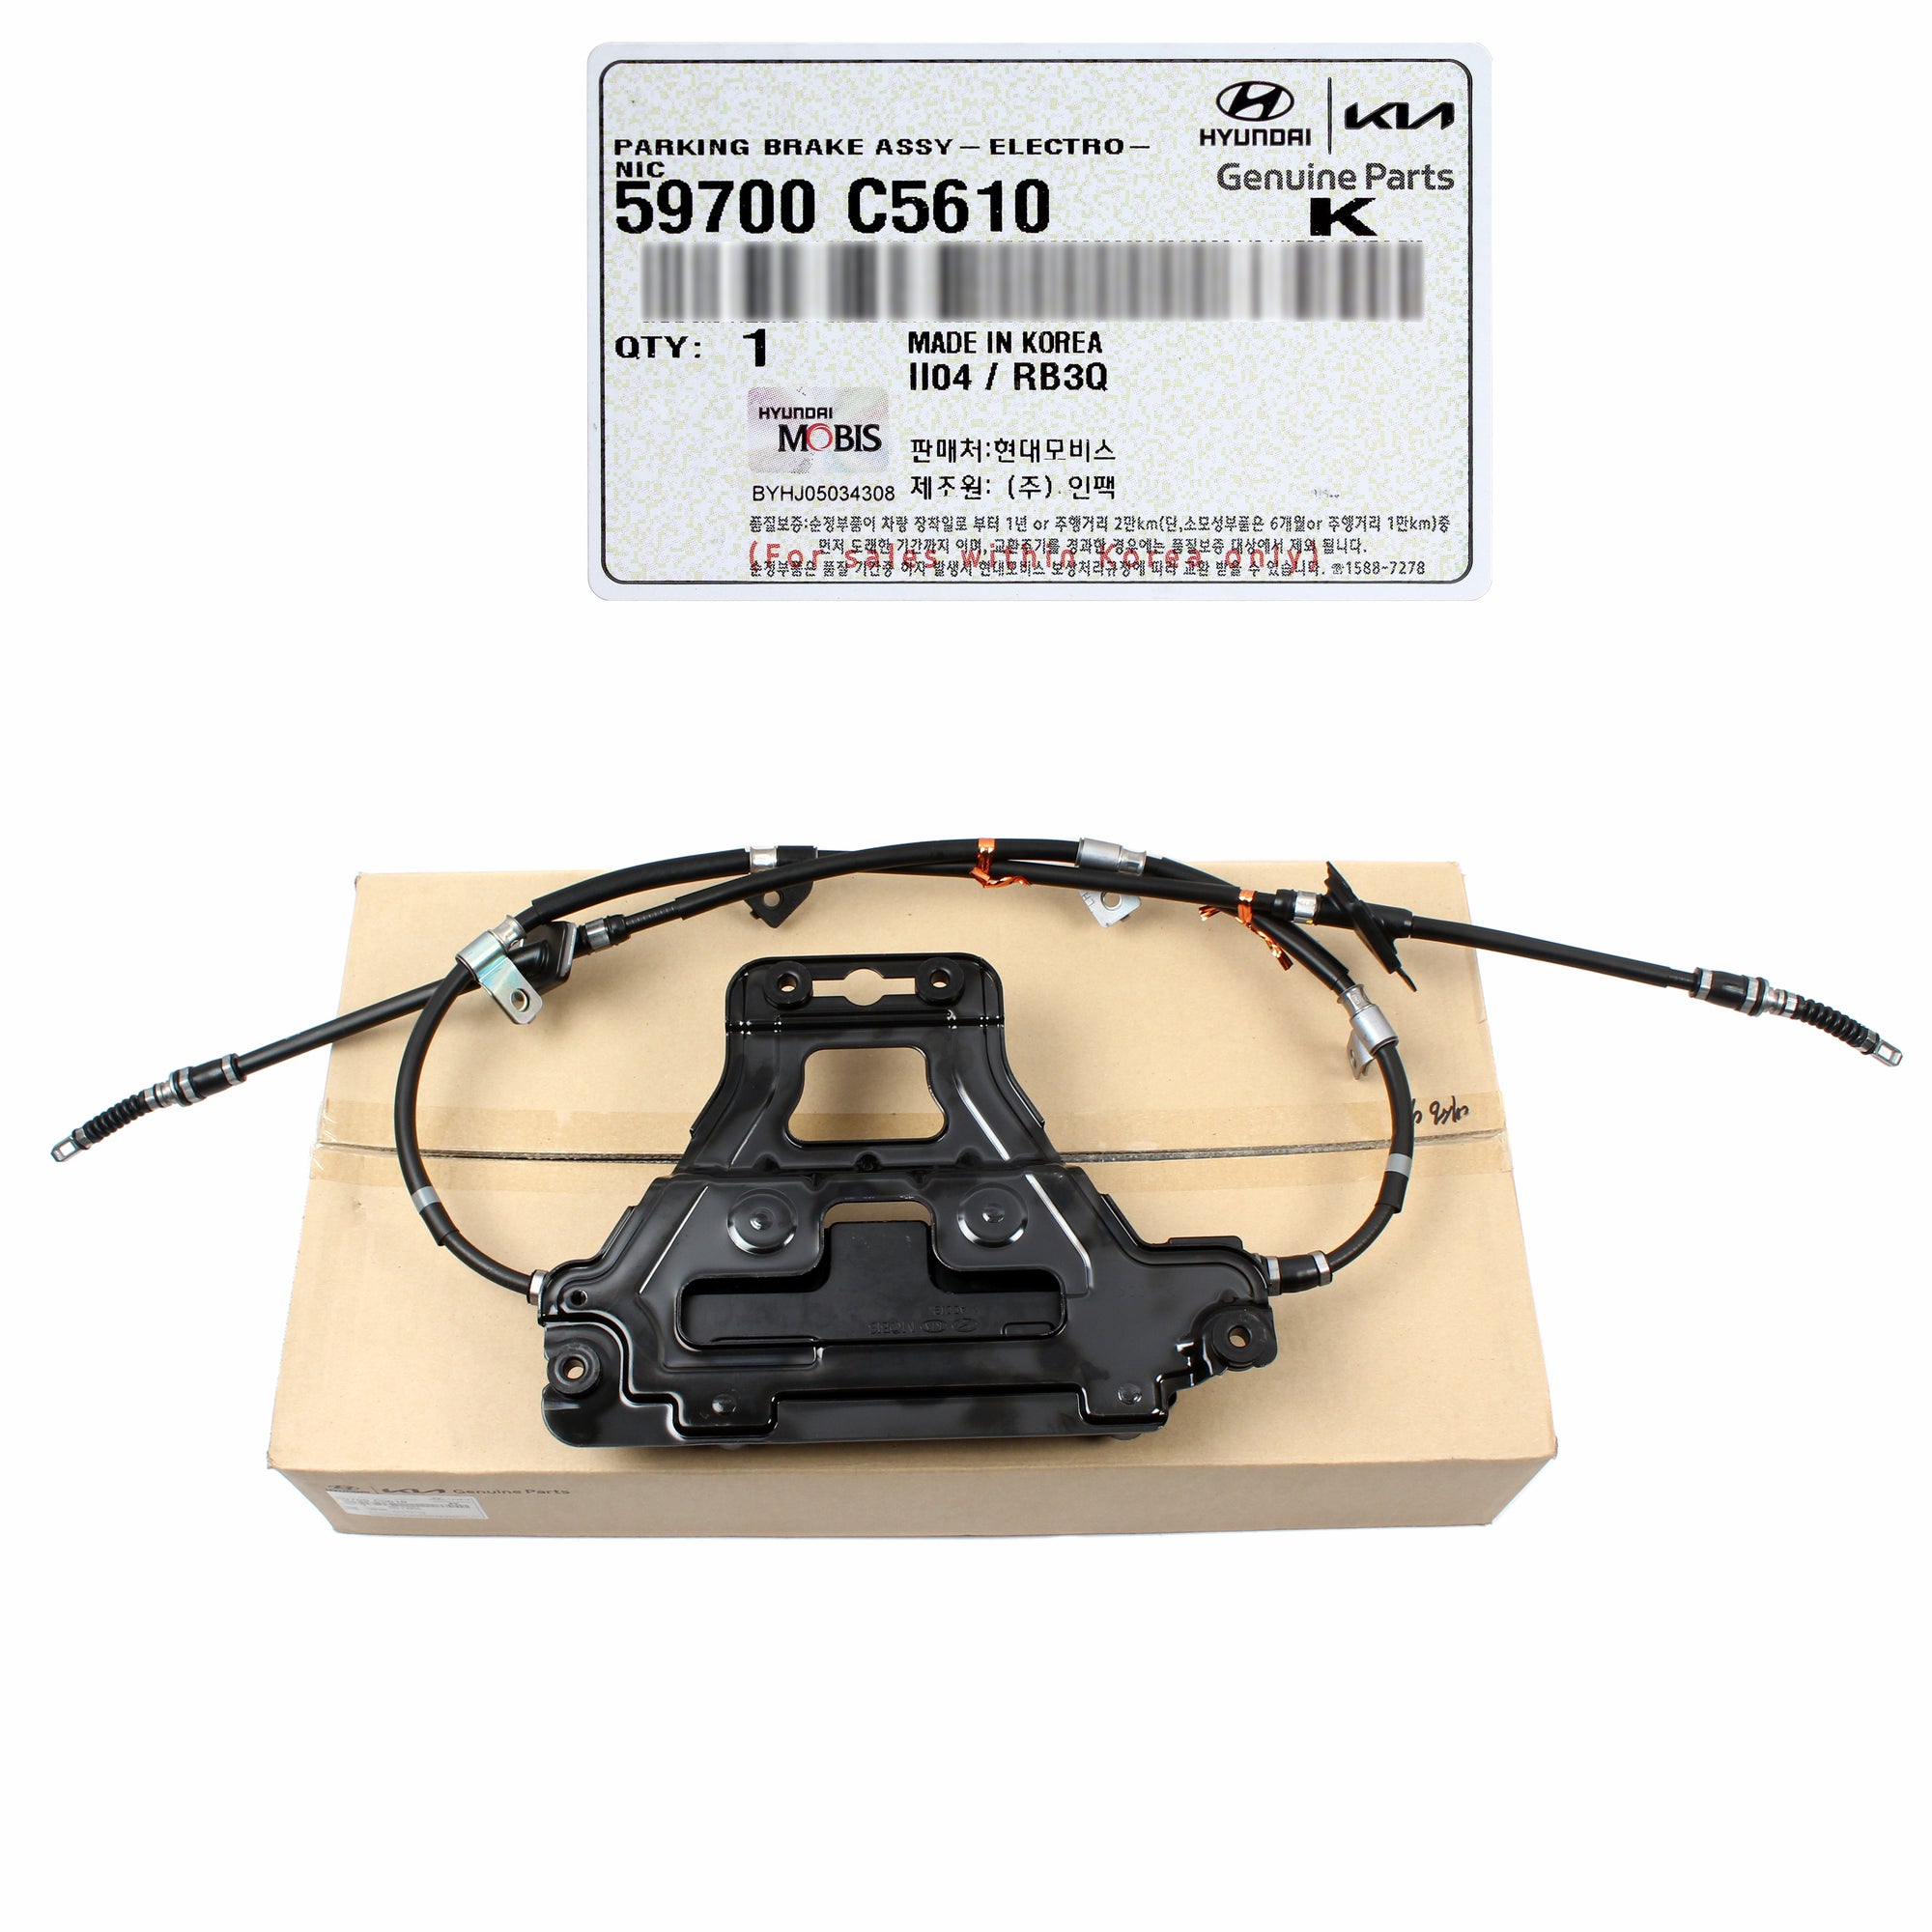 GENUINE Electronic Parking Brake Cable for 2016-2019 Kia Sorento 59700C5610